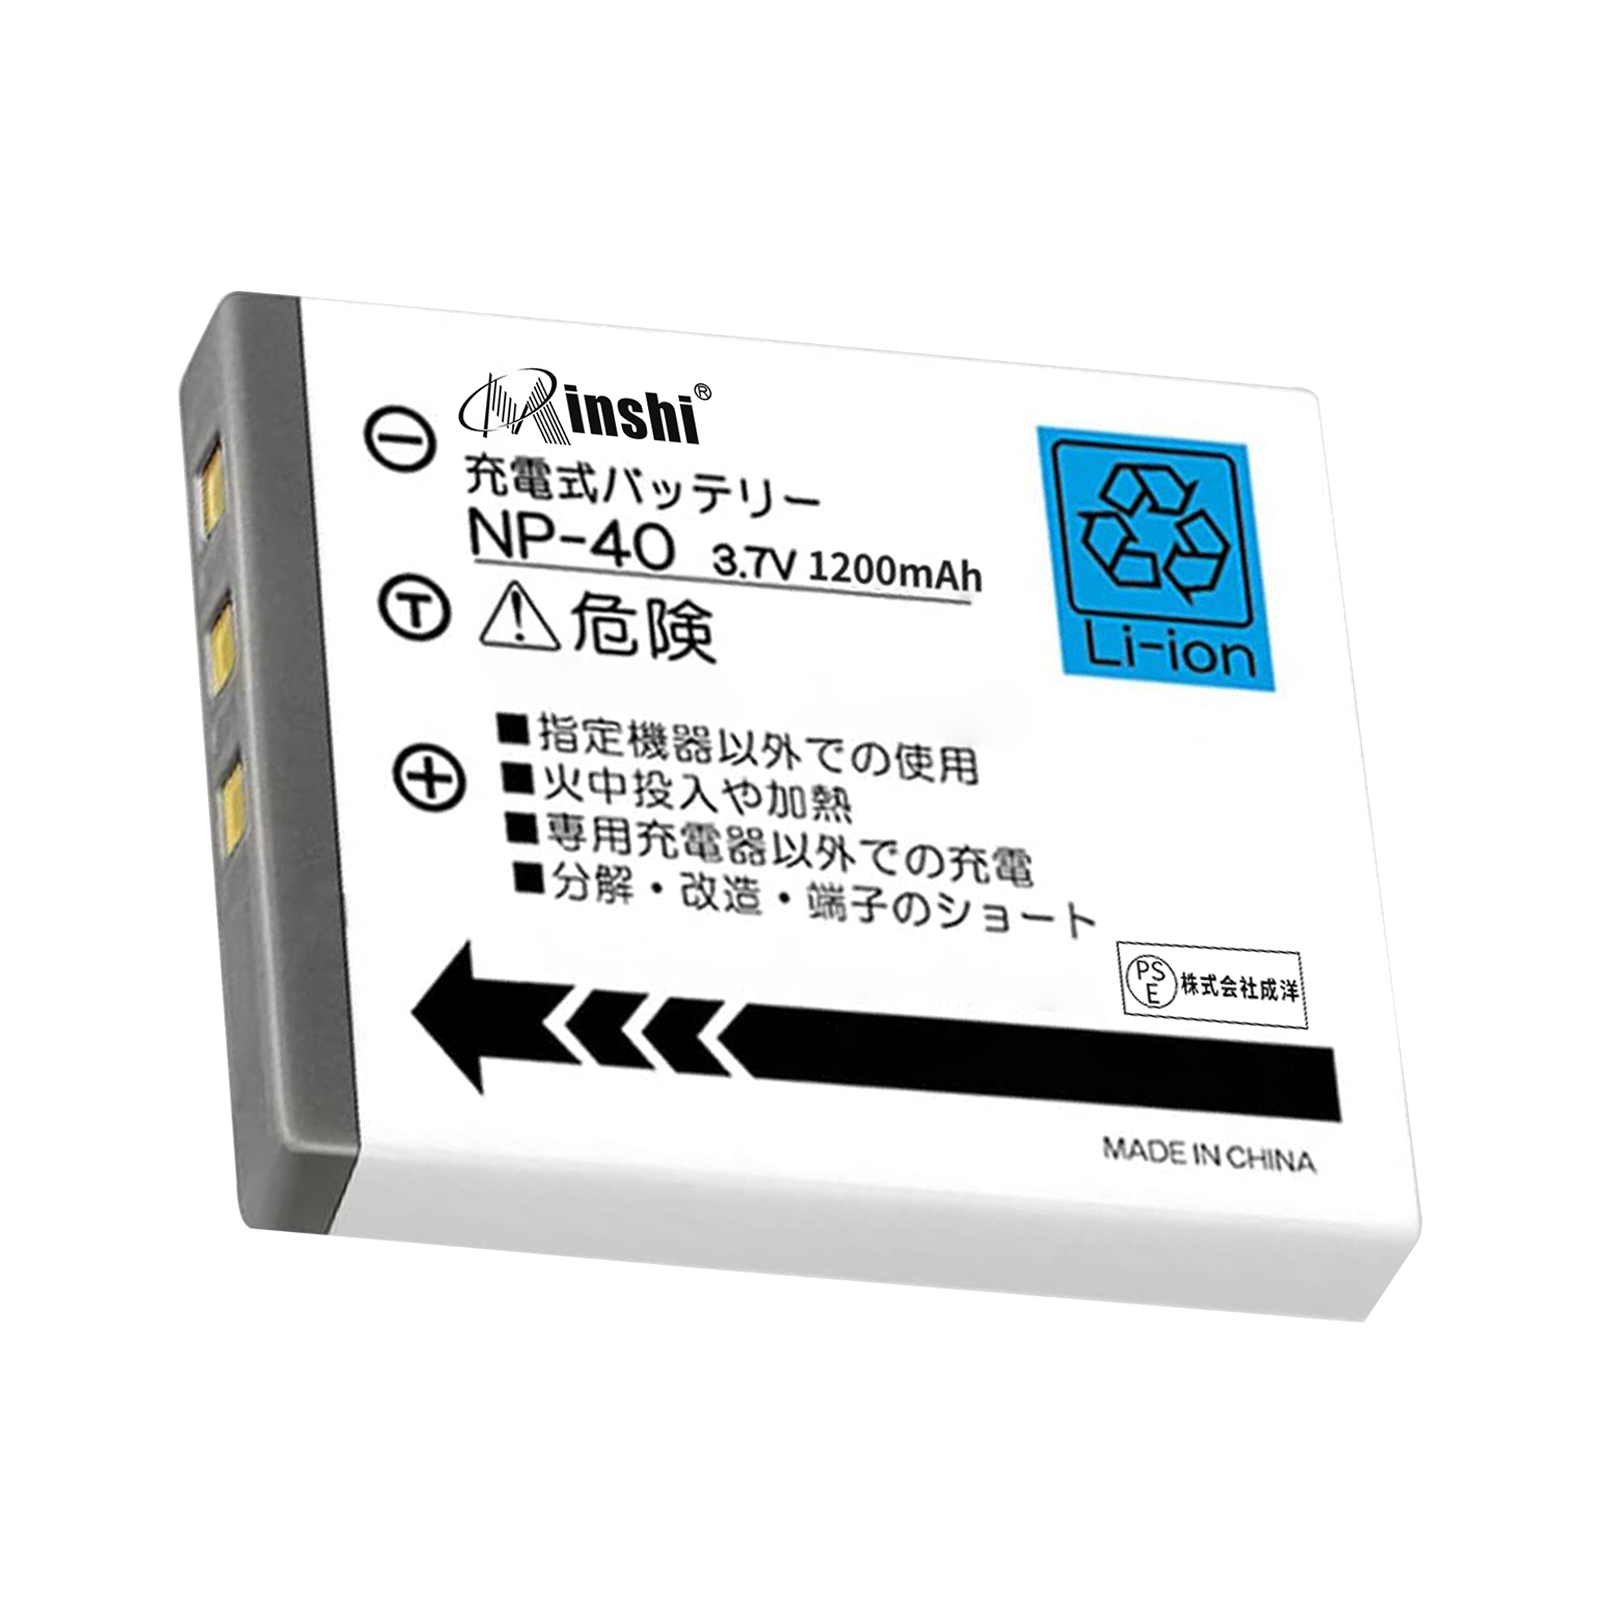 【1年保証】minshi PENTAX E65 D-LI8【1200mAh 3.7V】PSE認定済 高品質交換用バッテリー